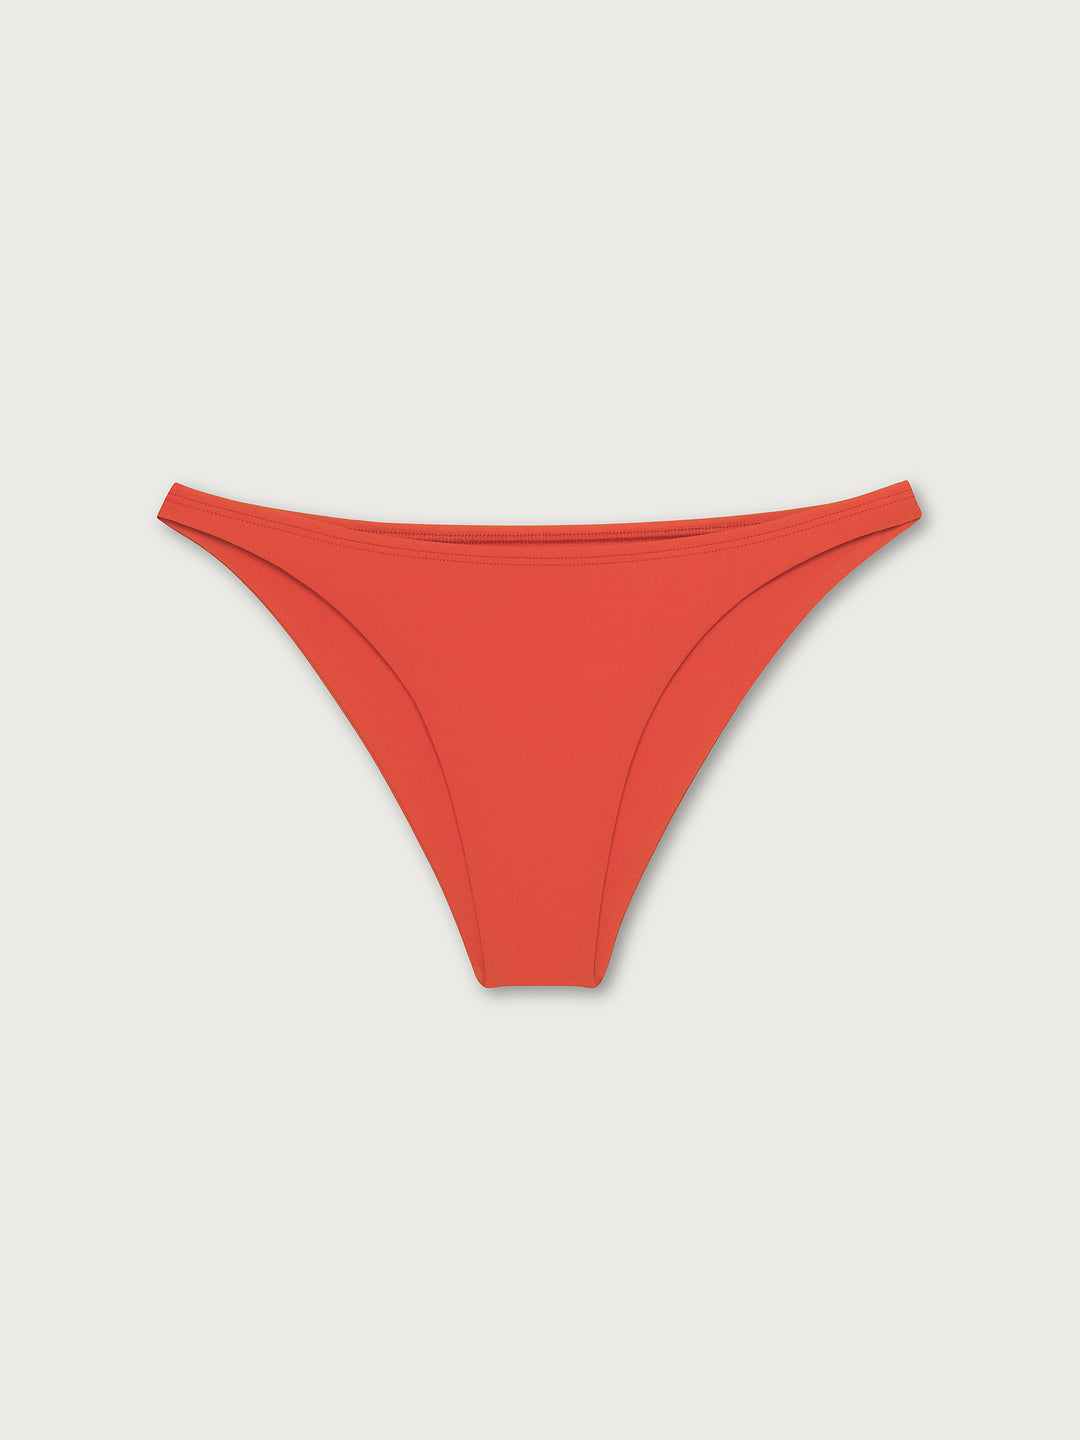 Red swimming bikini